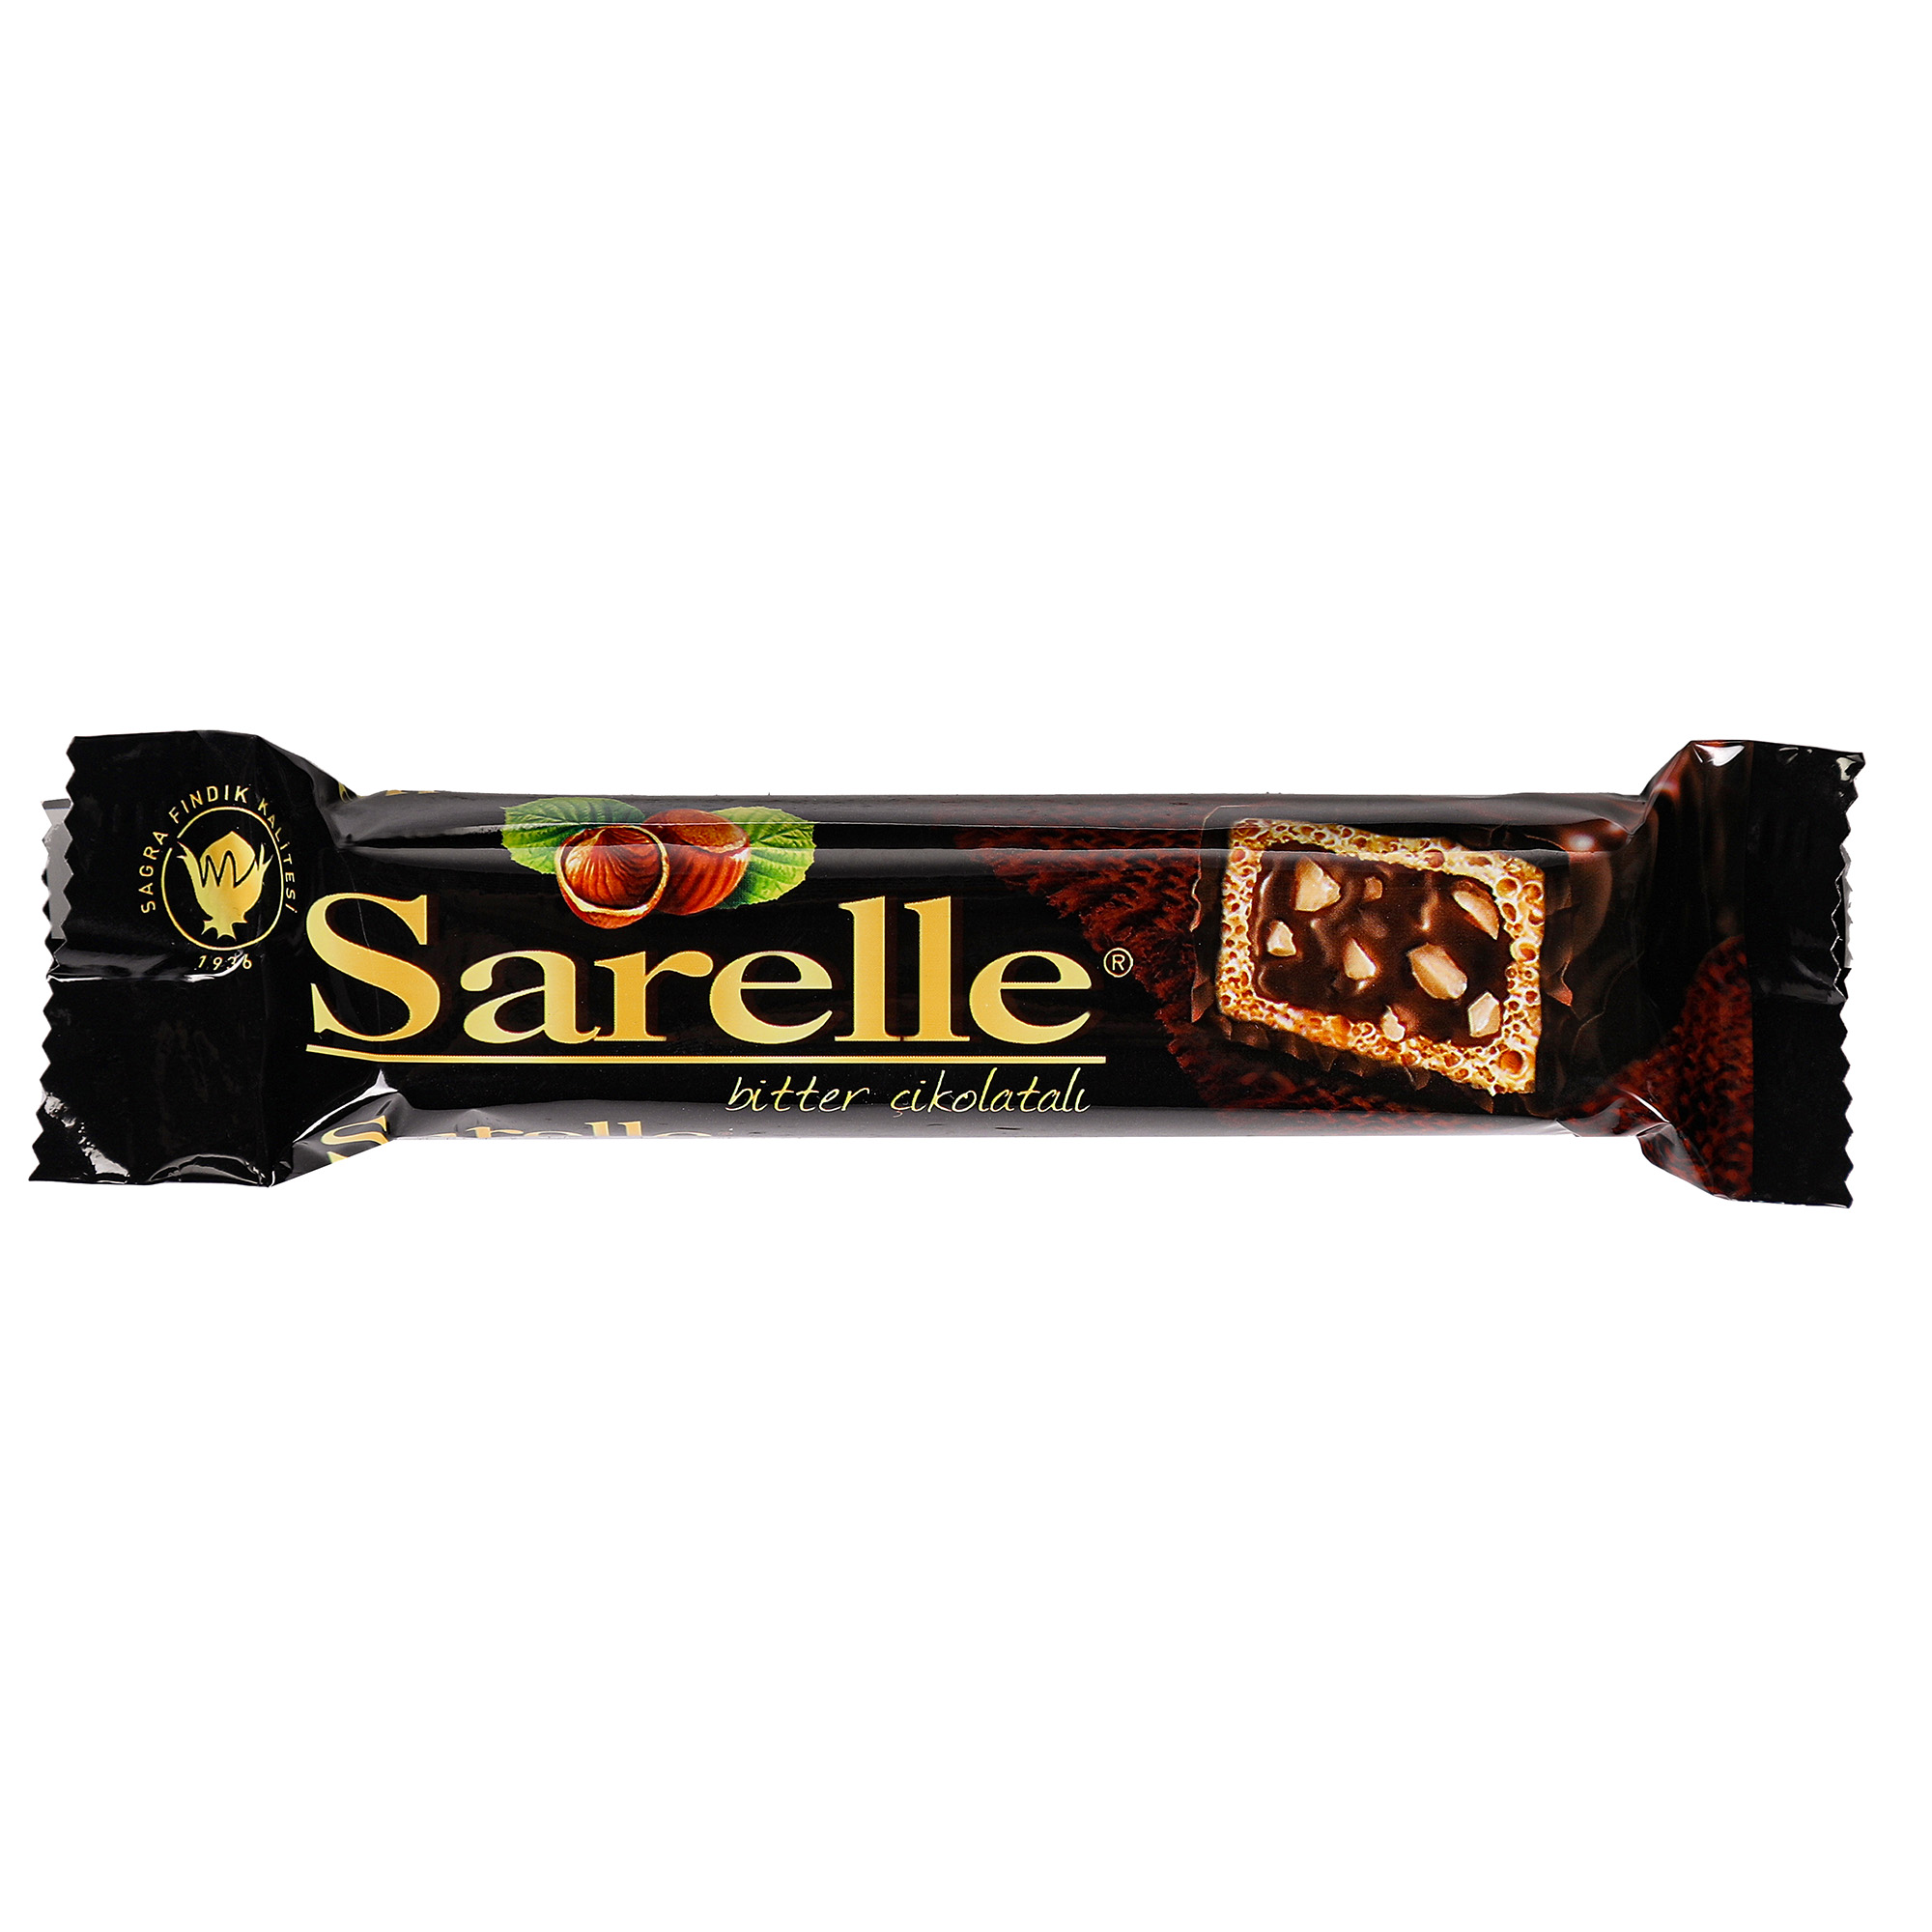 Вафли Sarelle с орехом и шоколадынм кремом в темном шоколаде, 33 г вафли sarelle с кремом из темного шоколада и какао 200 г